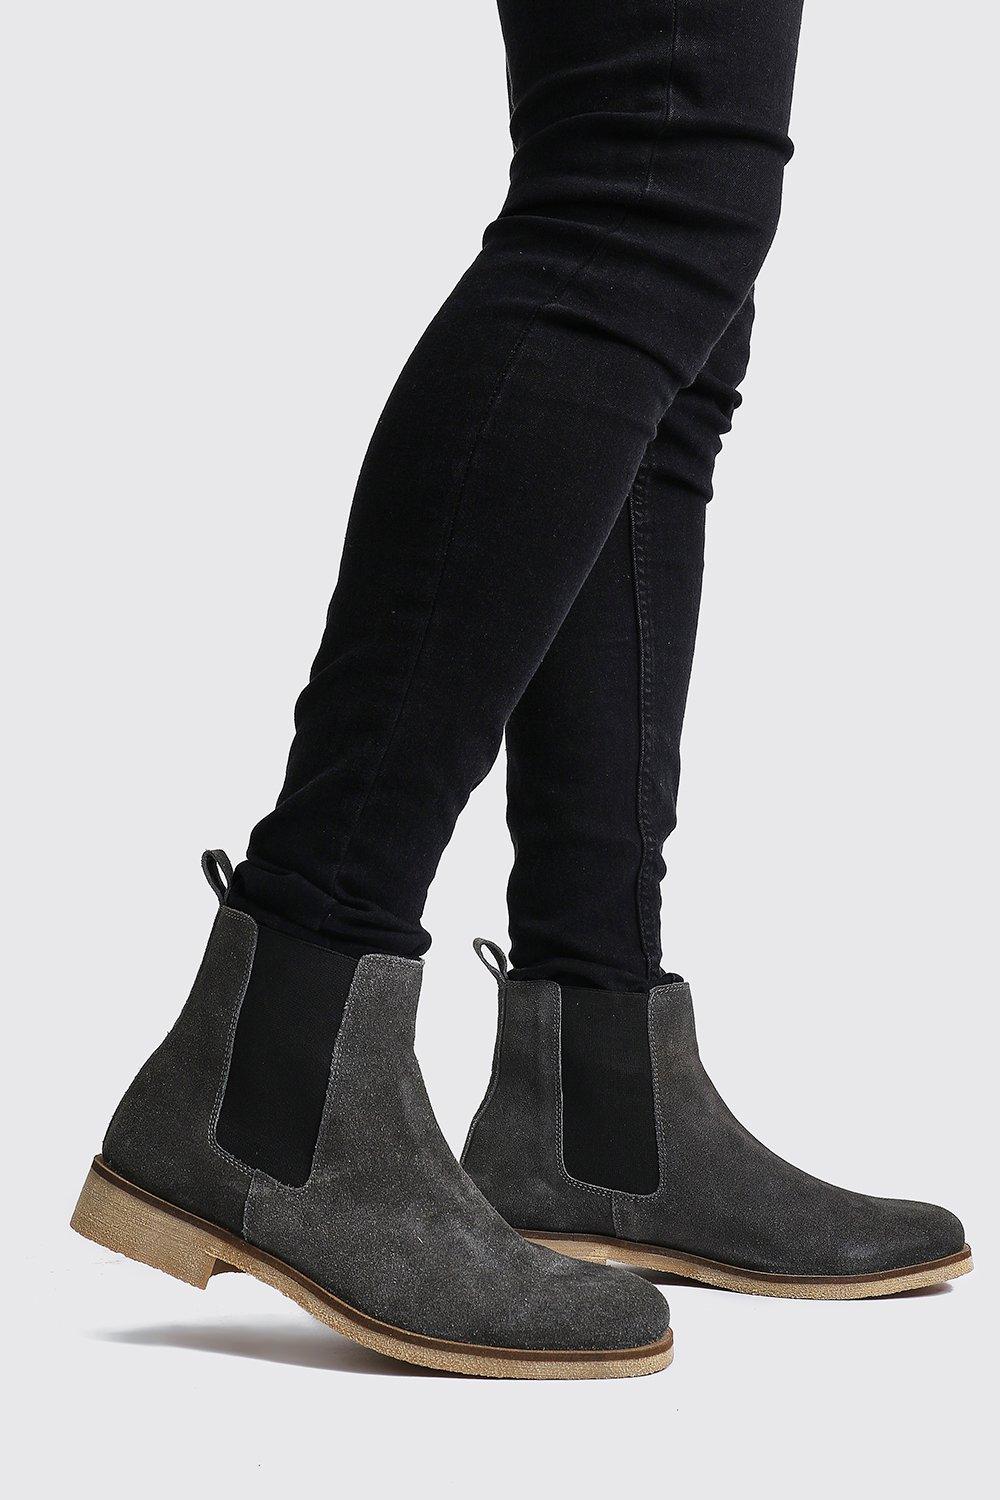 dark grey suede chelsea boots